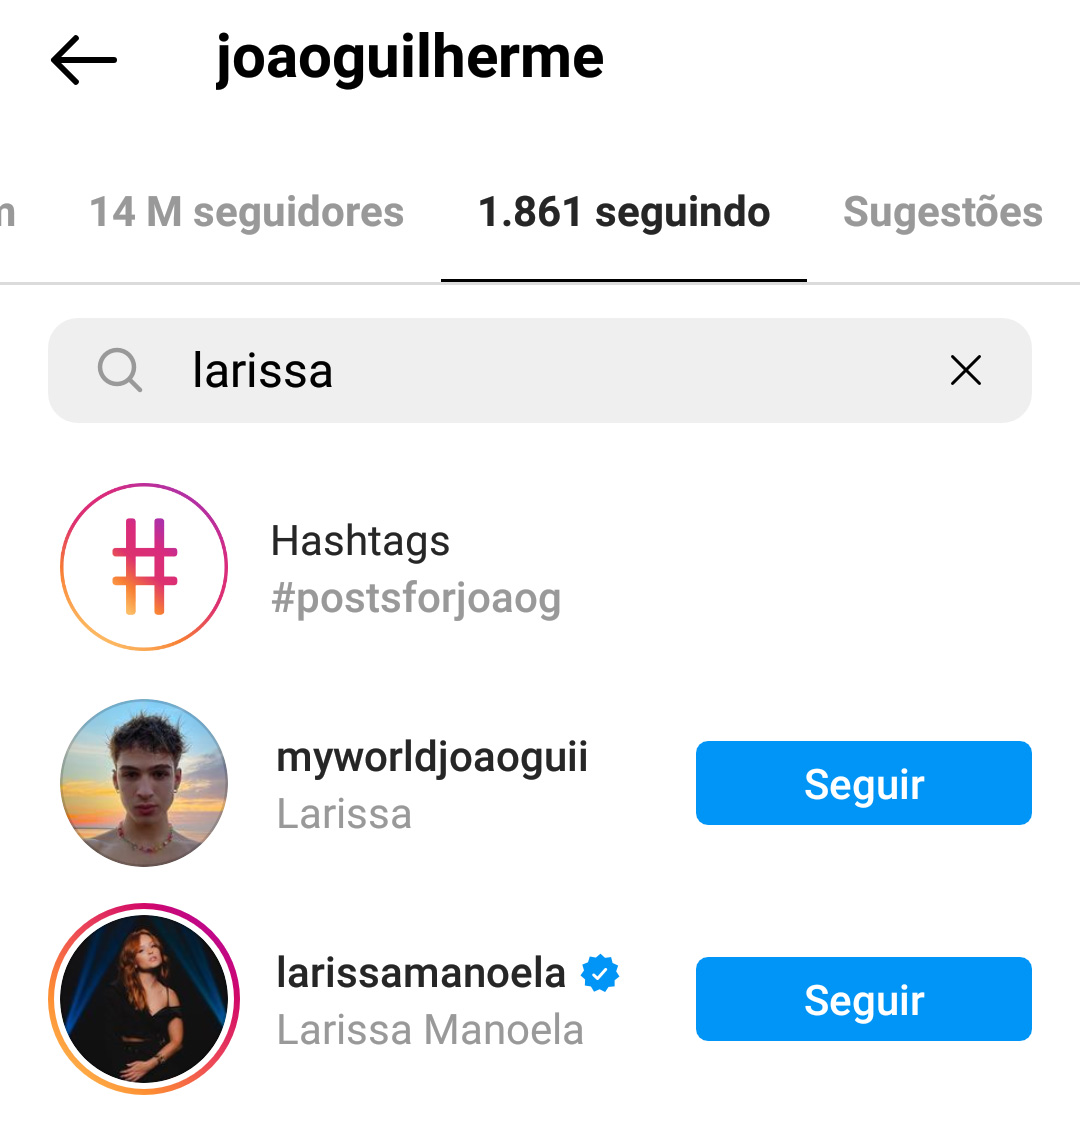 João Guilherme segue Larissa Manoela